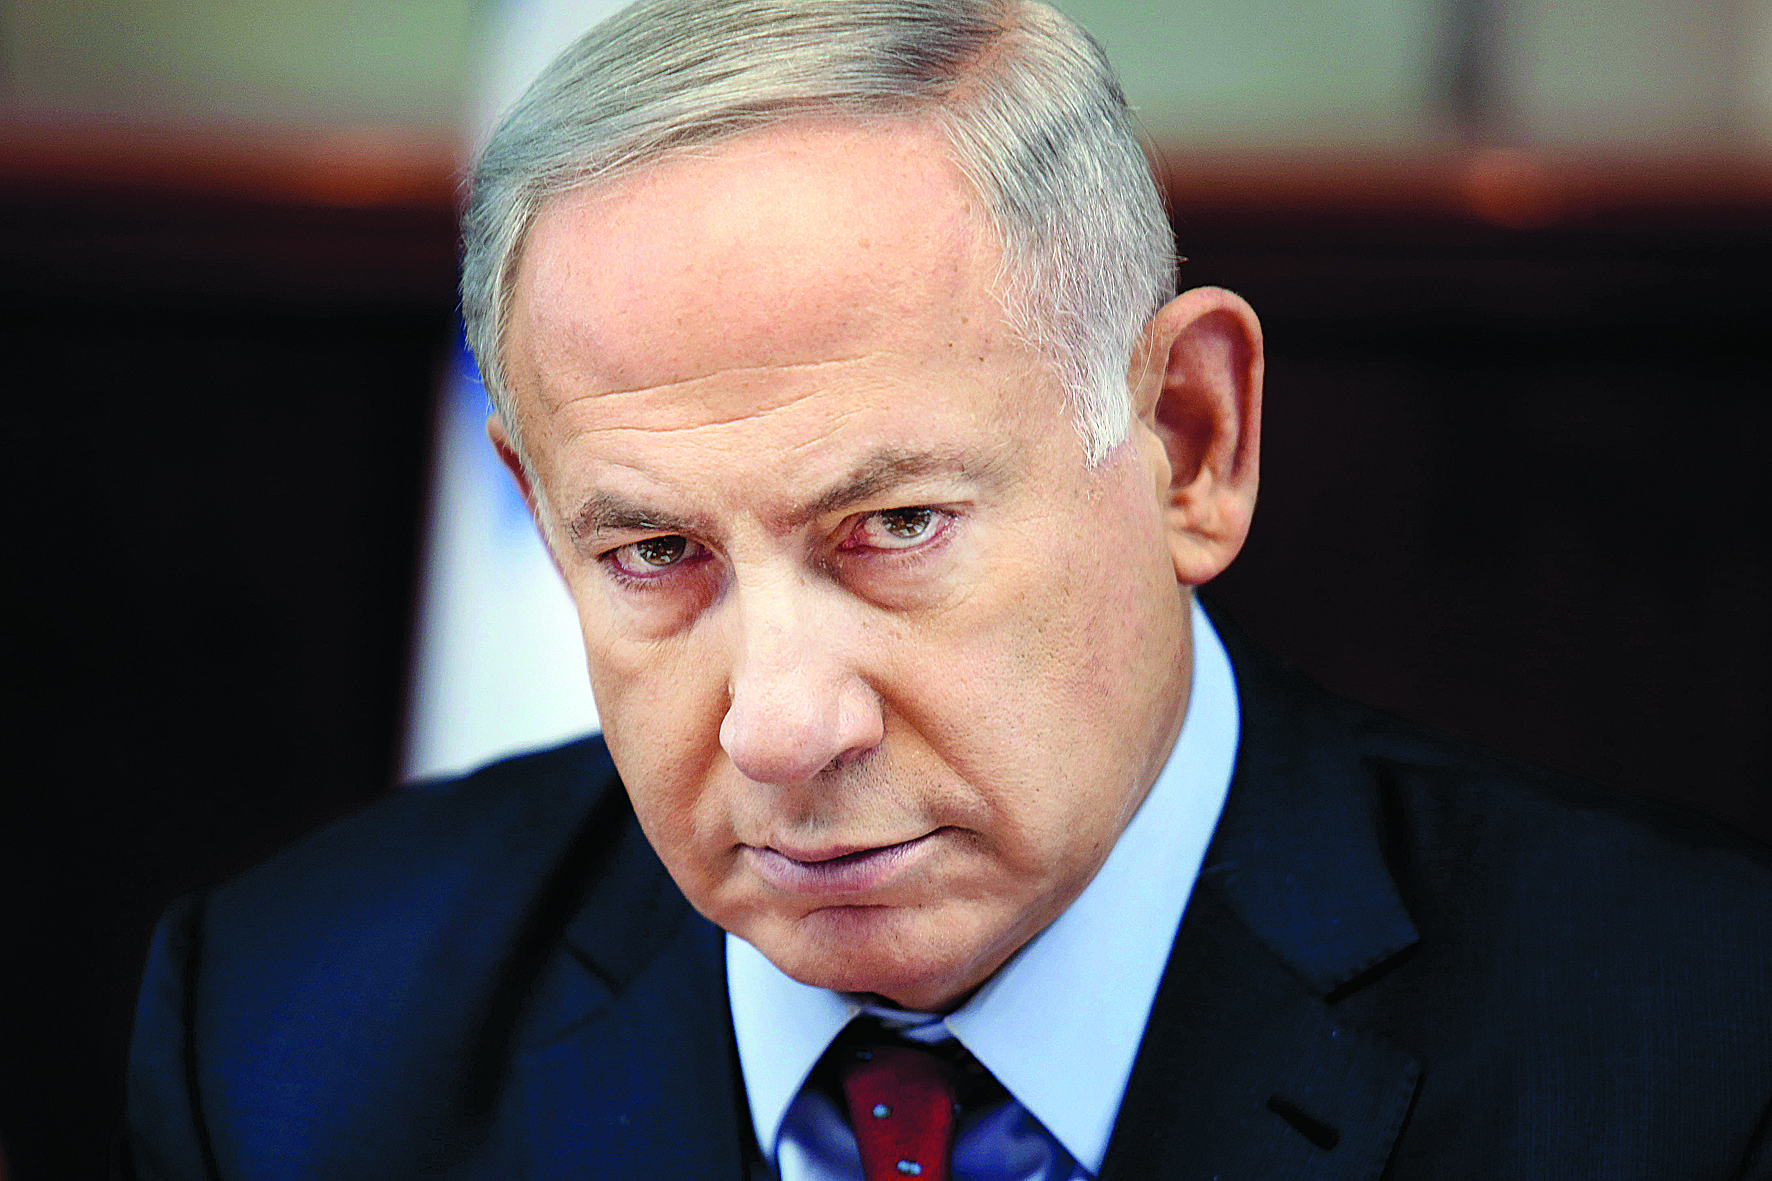 Netanyahu dificulta possibilidade de tréguas em Gaza, diz Hamas